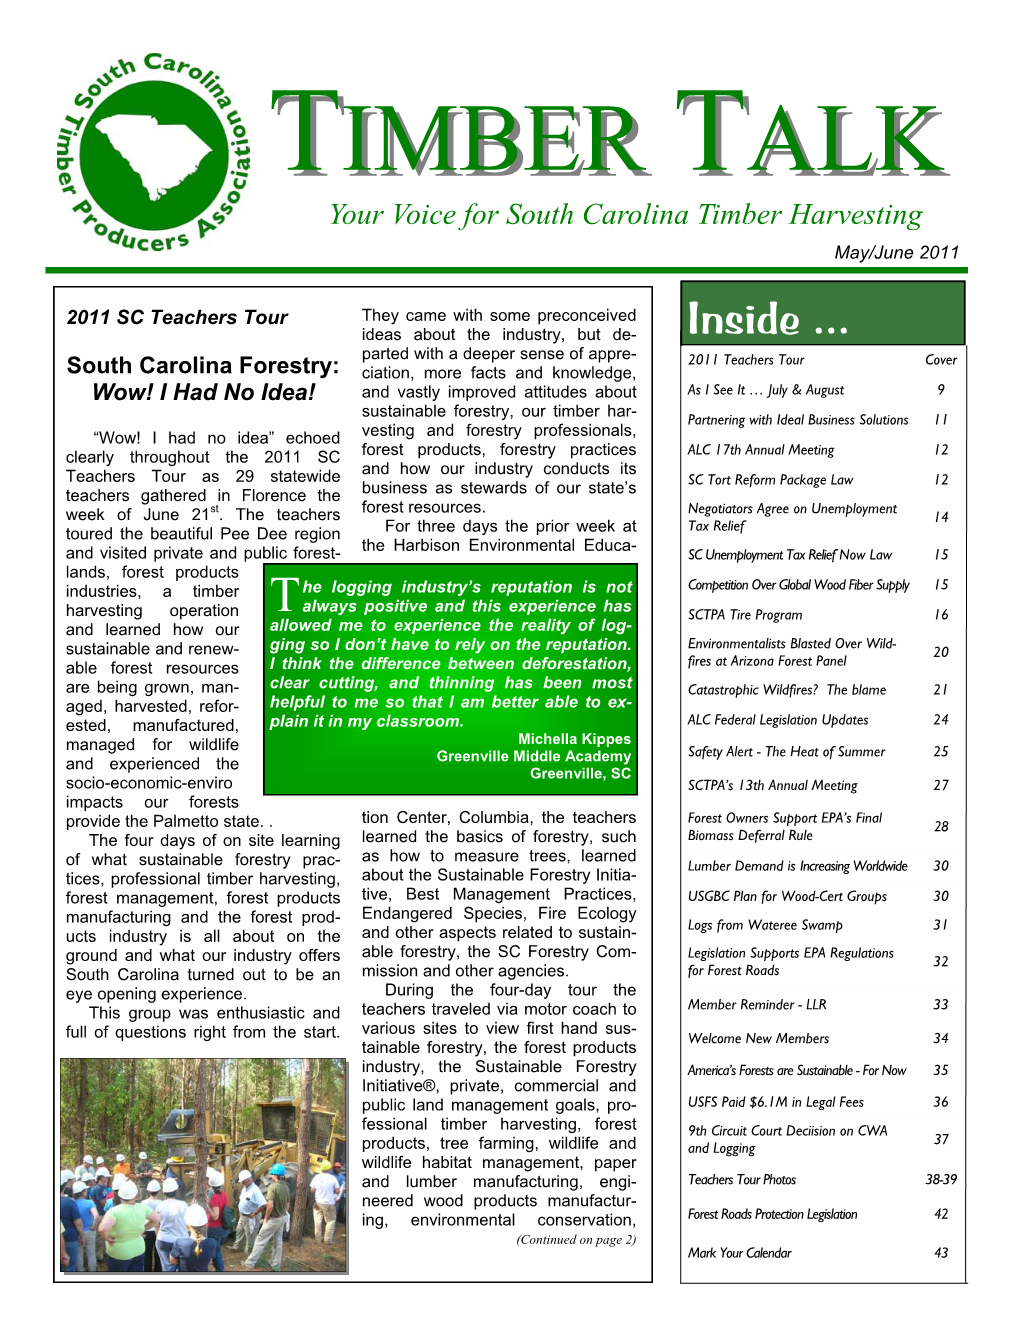 Timber Talk May June 2011